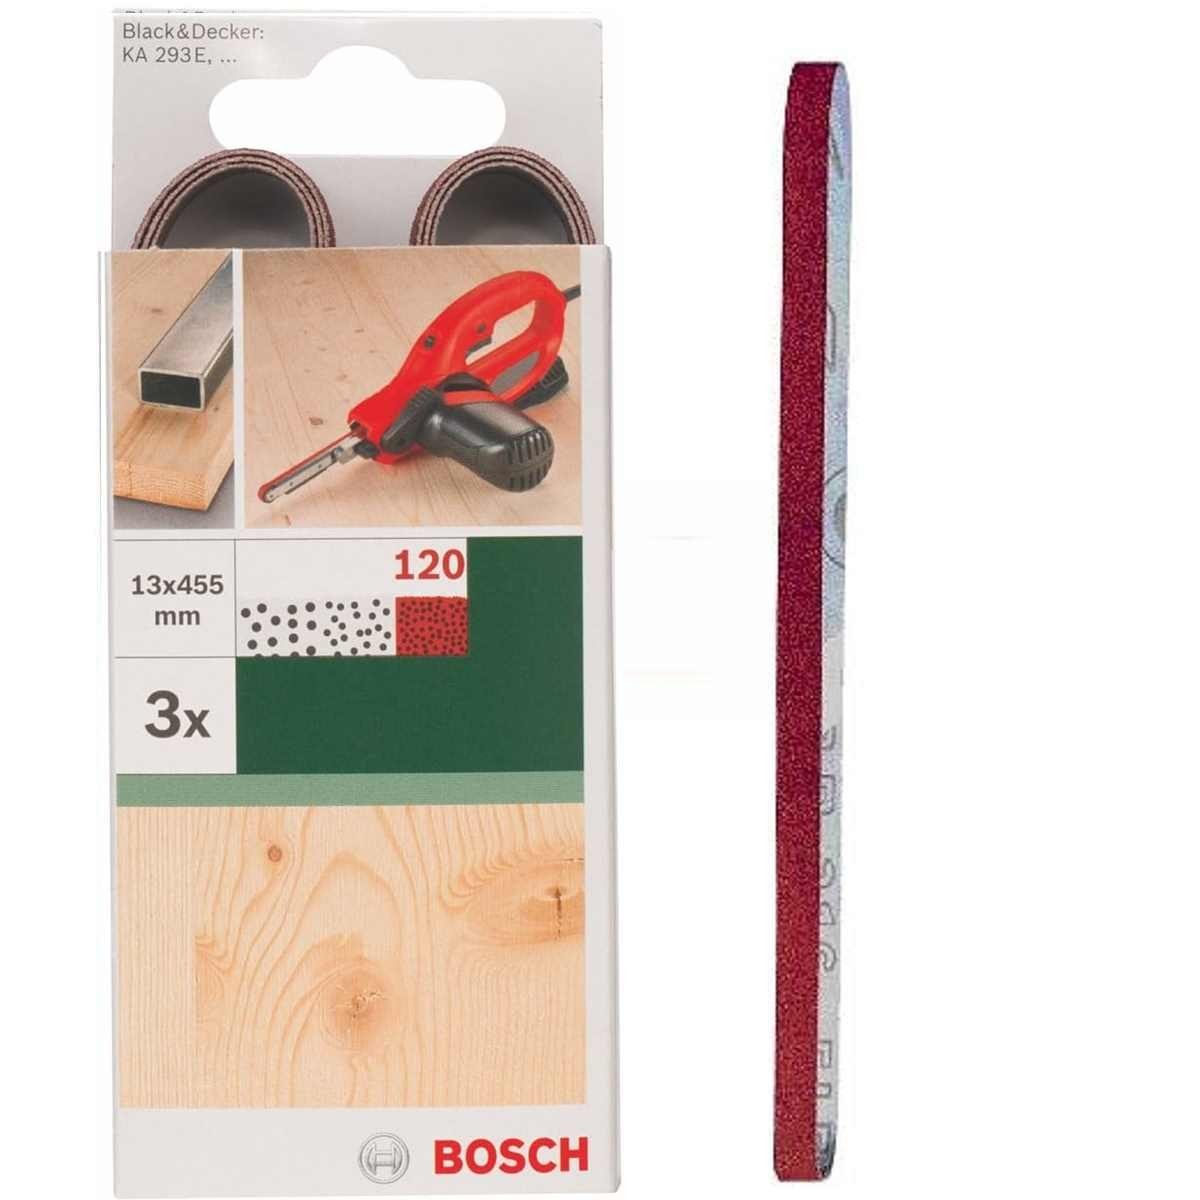 BOSCH Bohrfutter Bosch 3 Schleifbänder für B+D Powerfile KA 293E 13 x 451 mm, K 120